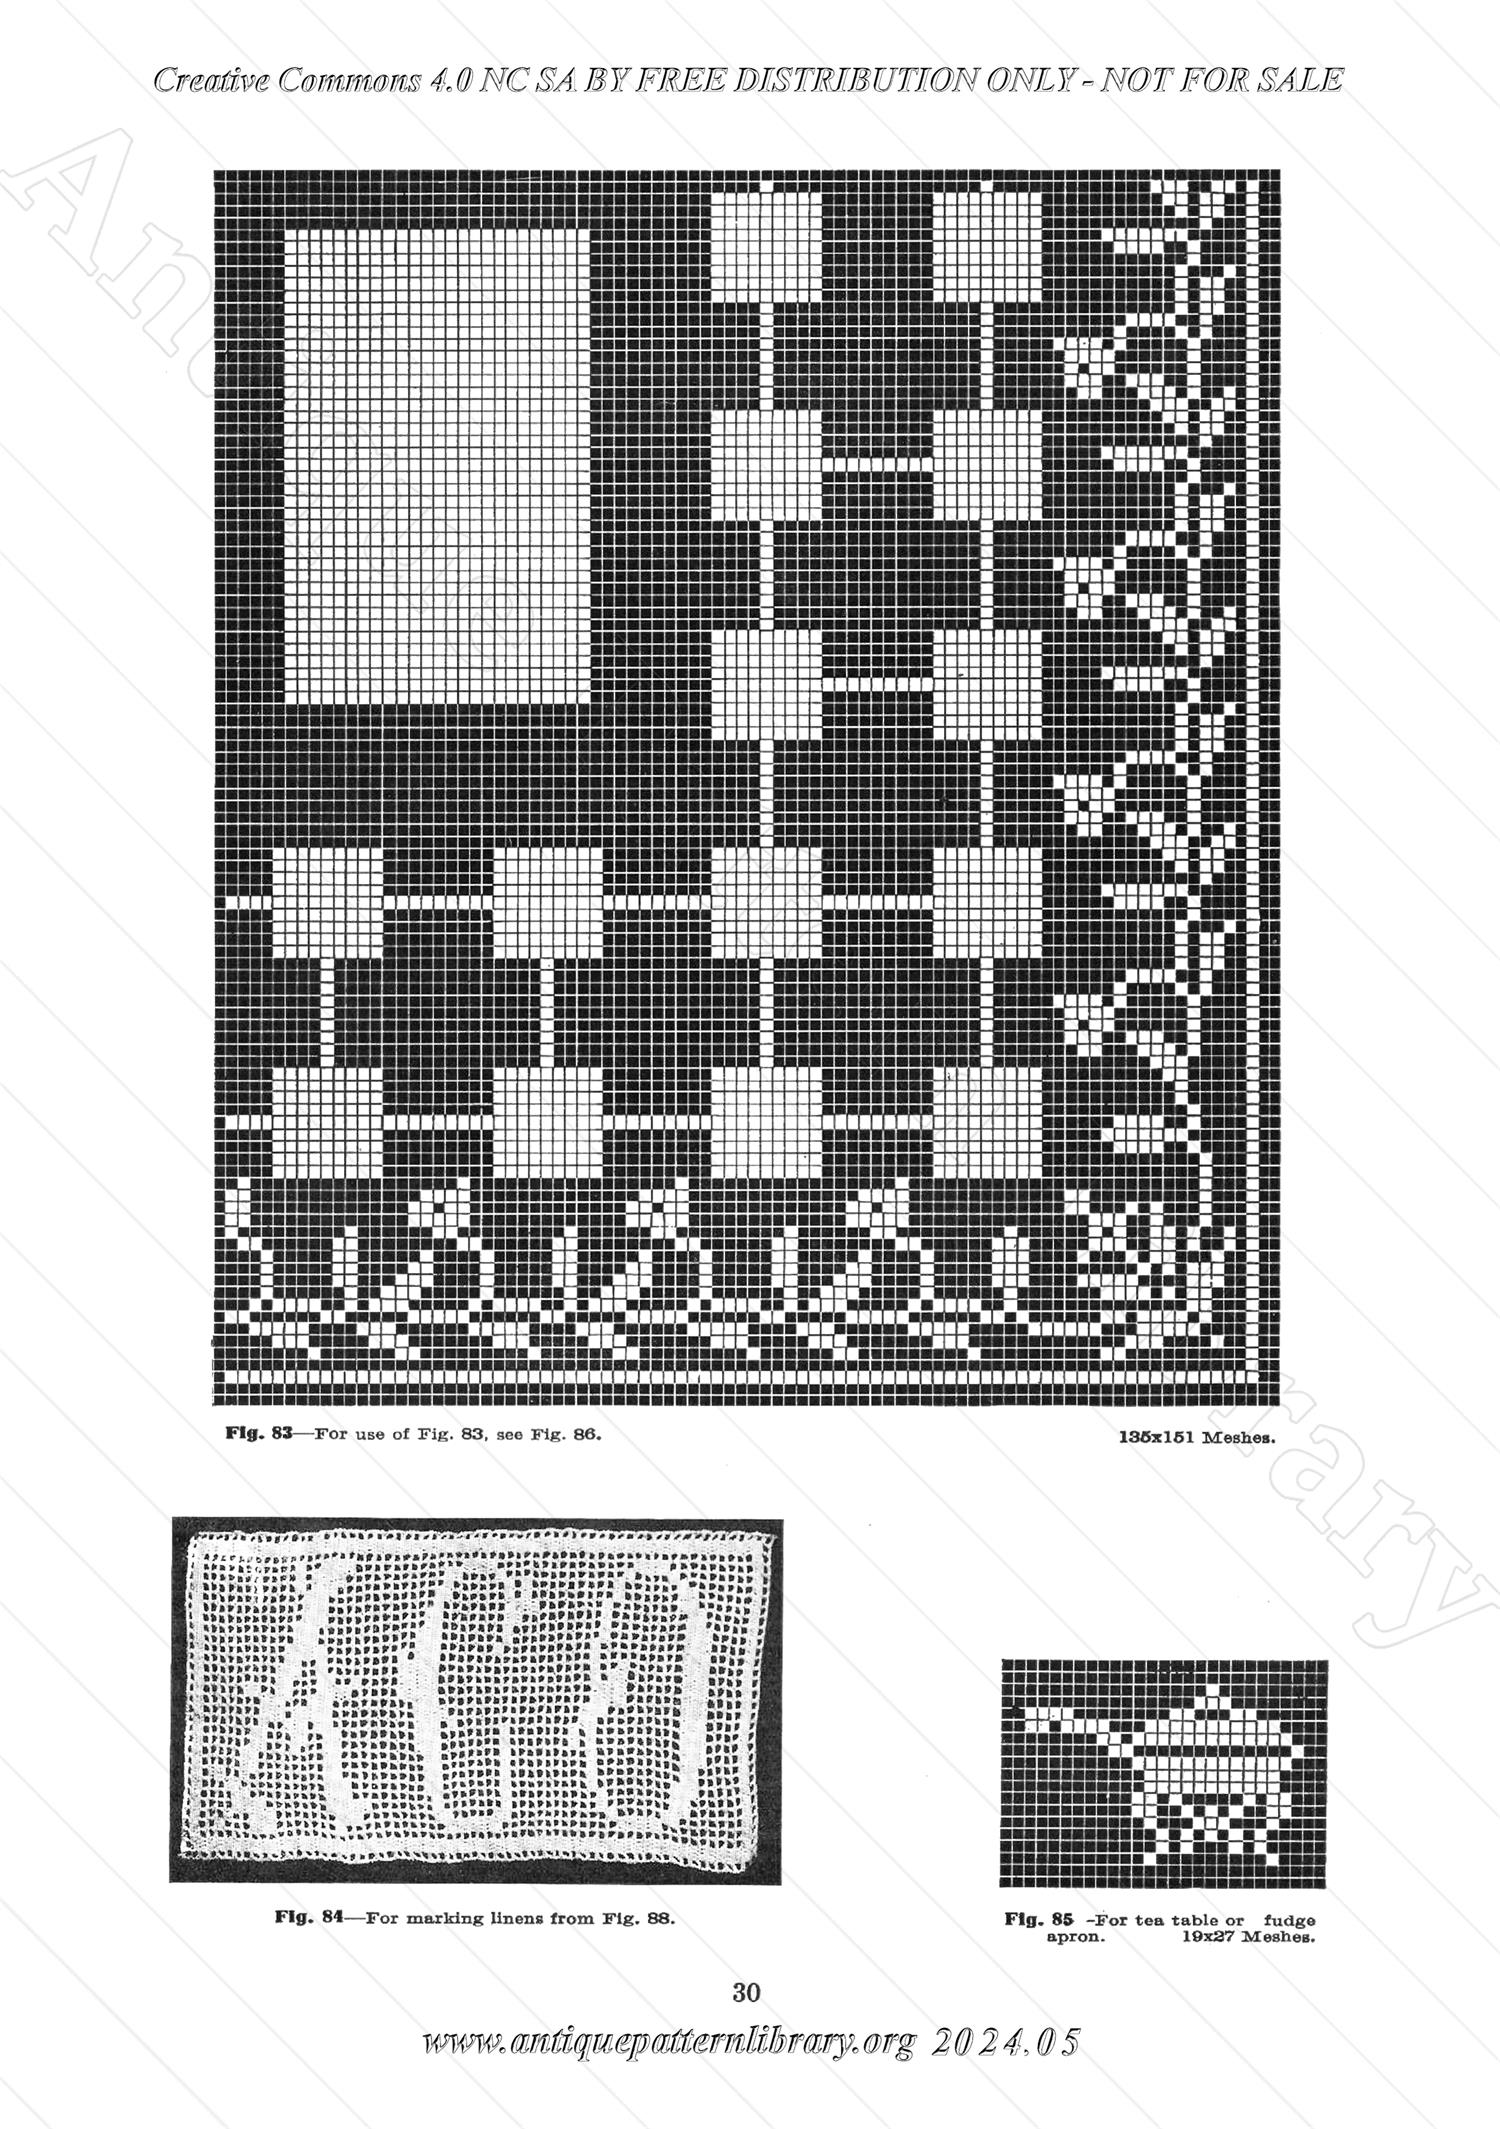 J-PA132 Filet Crochet Designs